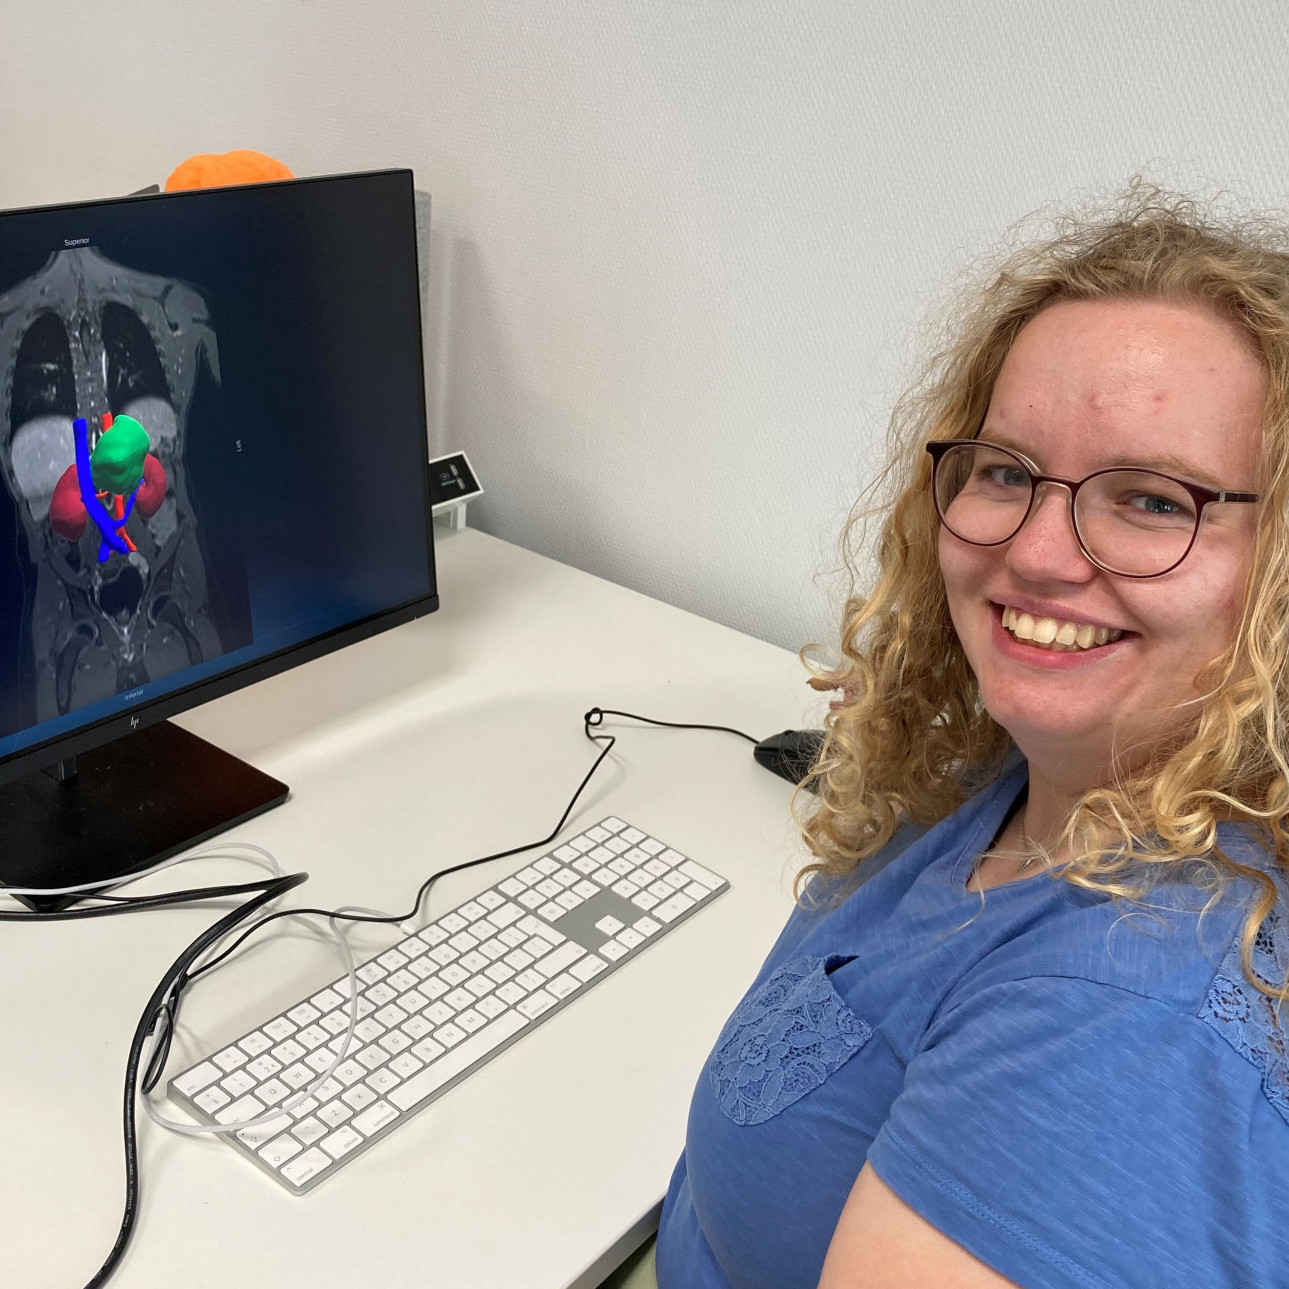 AI challenge to improve neuroblastoma surgeries